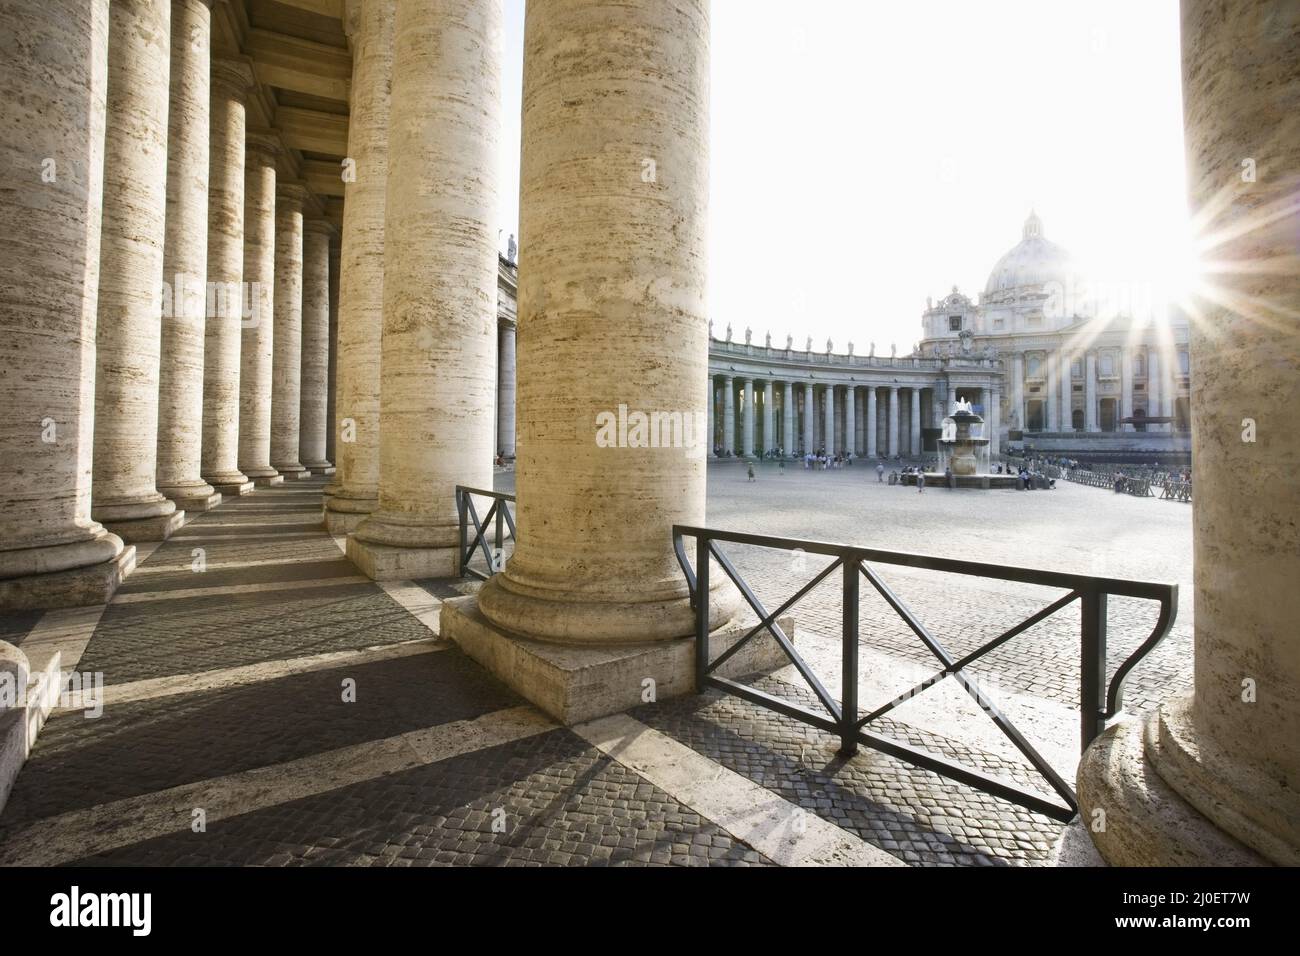 Basilica di San Pietro dal Colonnato Vaticano del Bernini, Roma, Italia Foto Stock